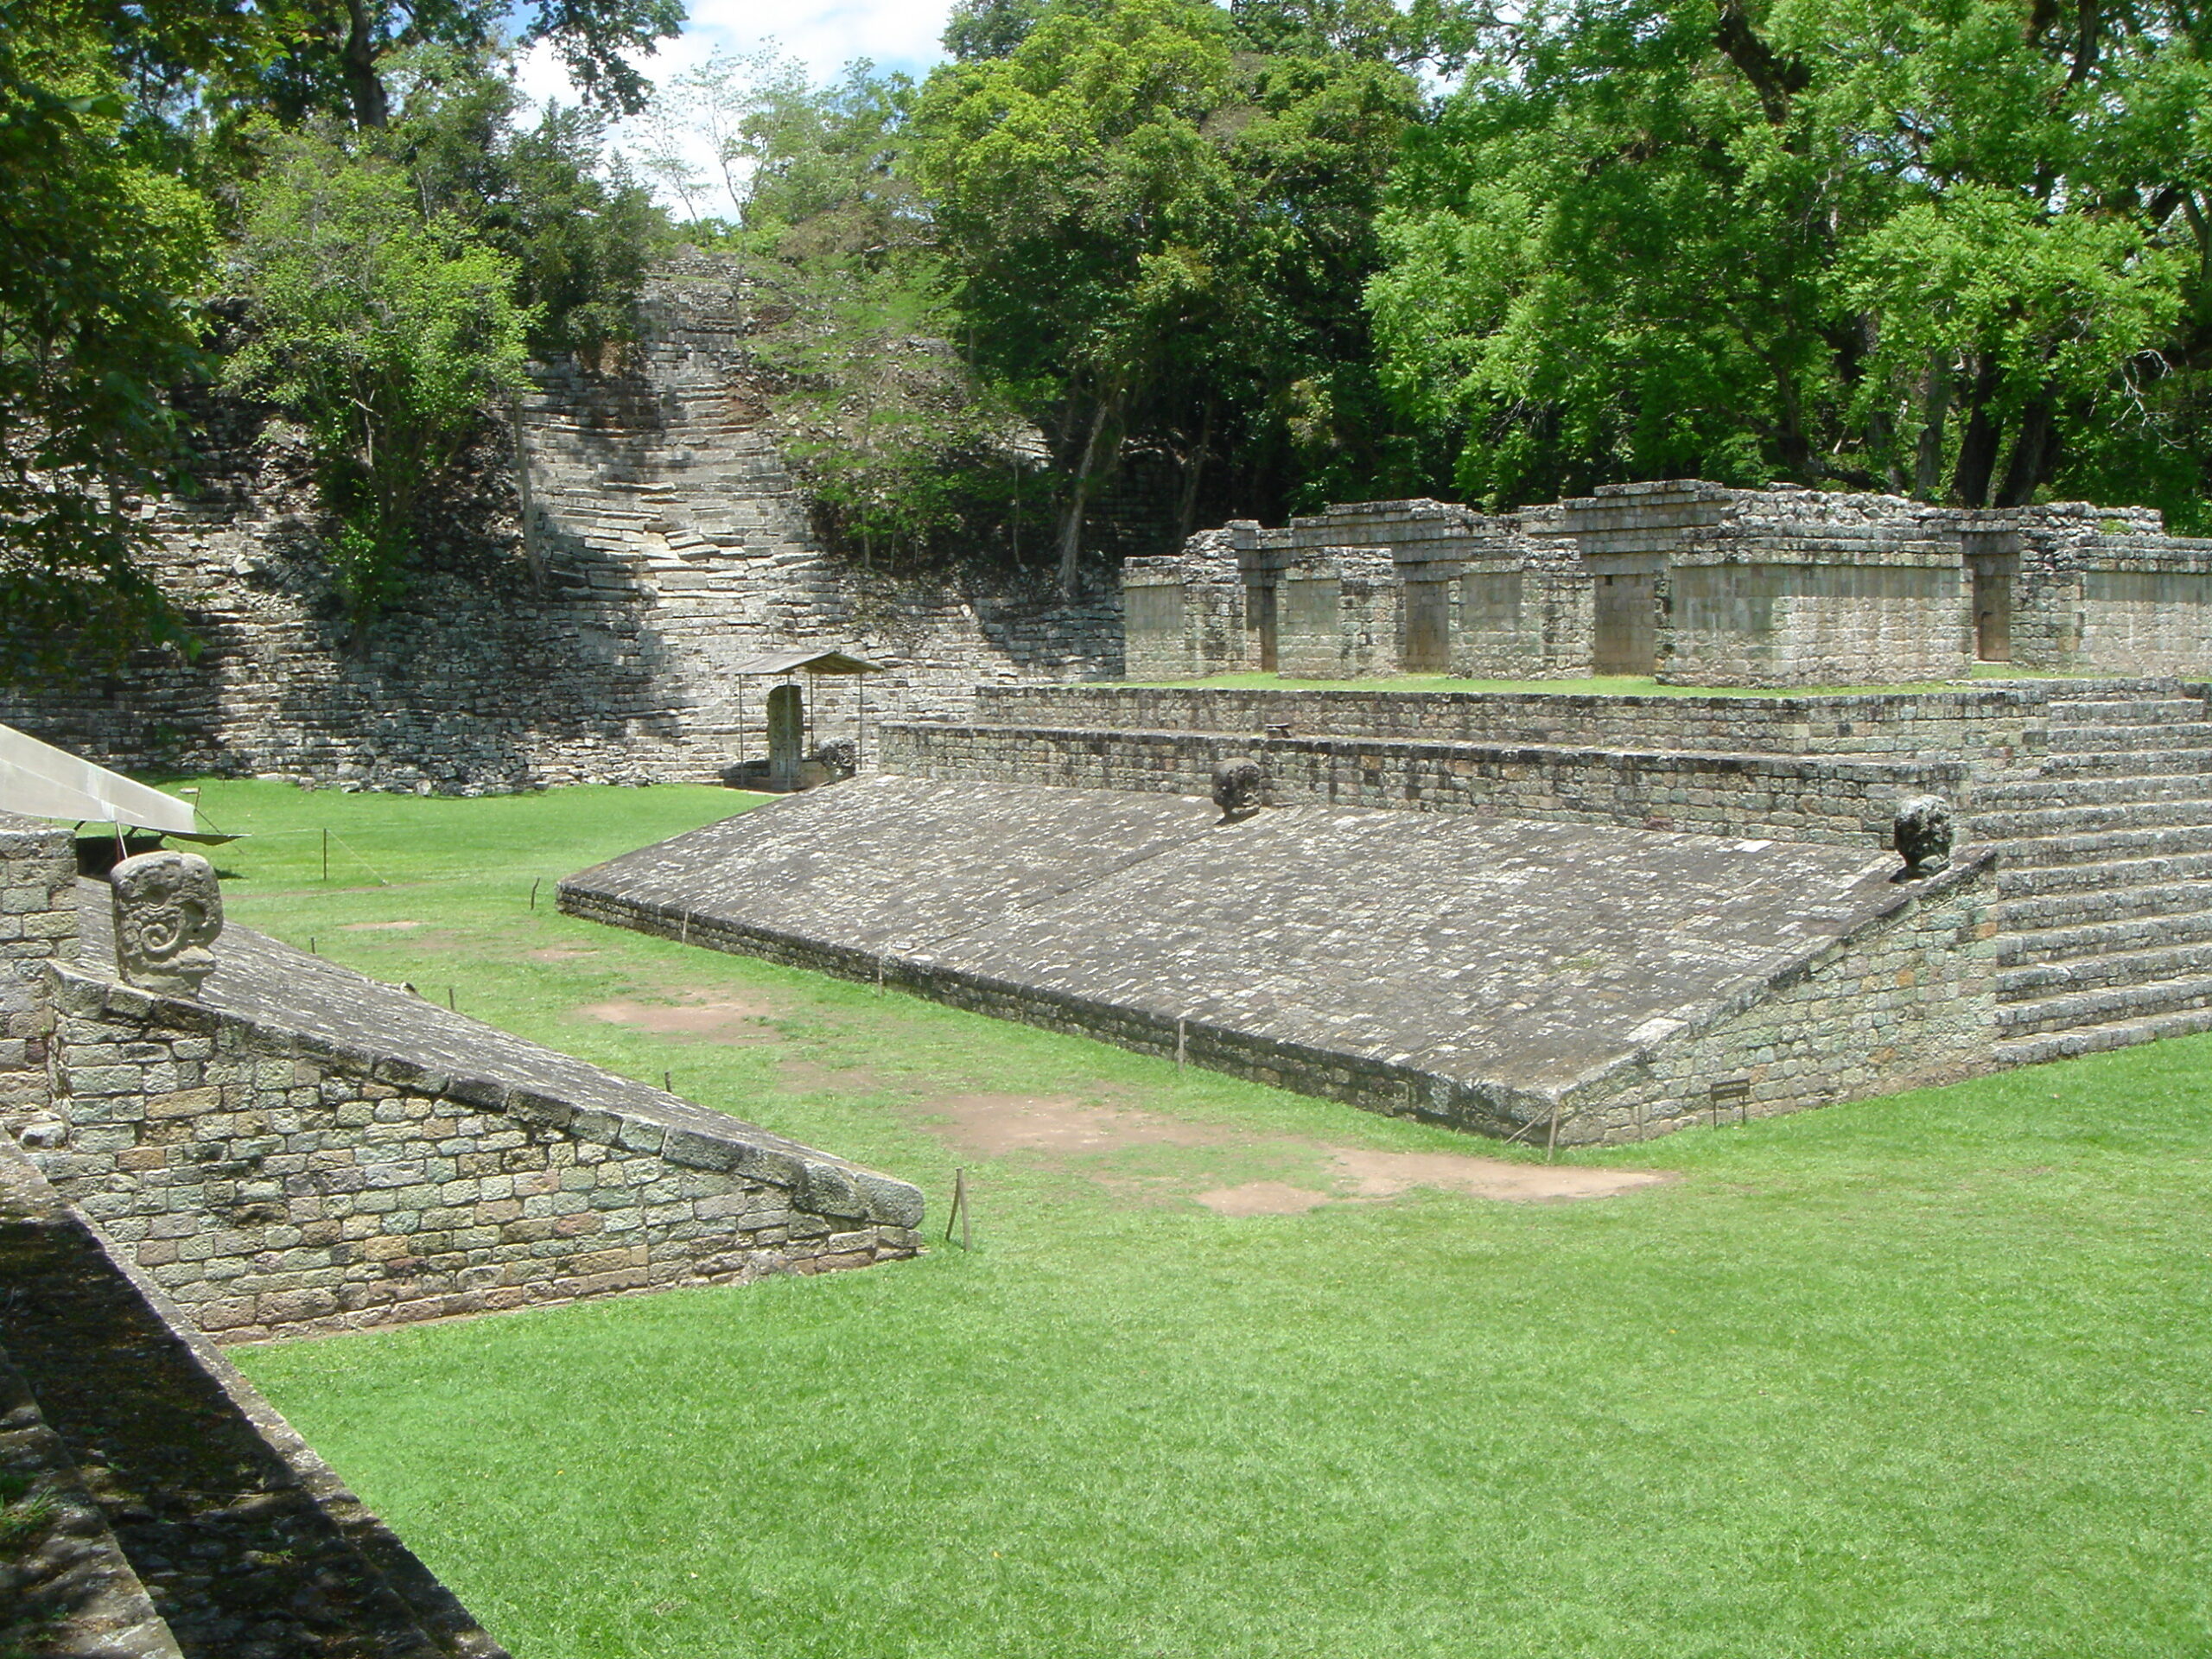 The ruins in Copan, Honduras include a Mesoamerican ballgame court.